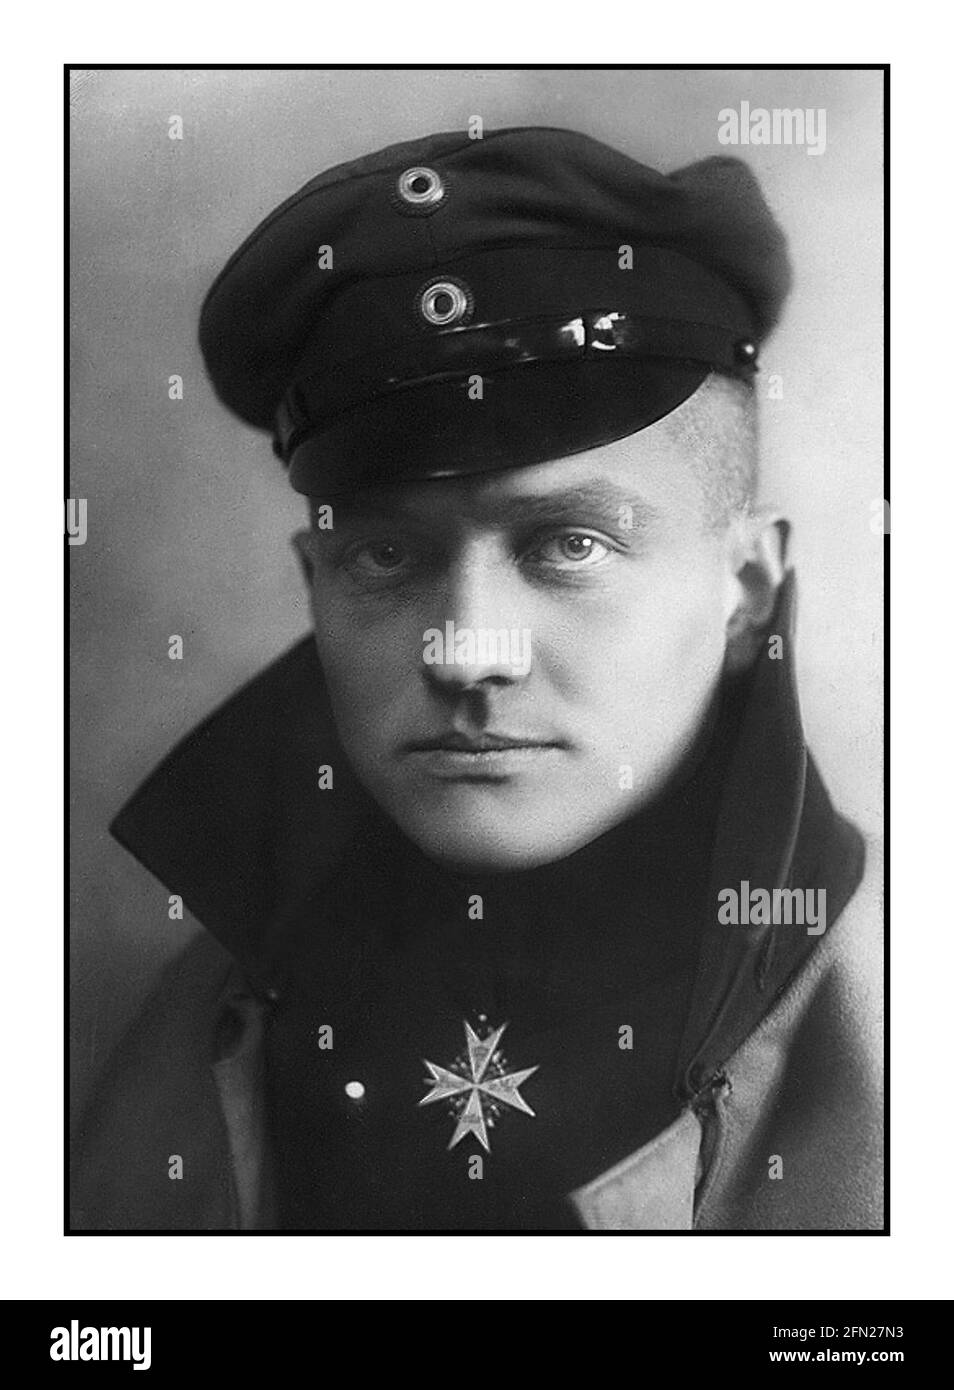 Ritratto DI BARONE ROSSO WW1 c1917 di Manfred Albrecht Freiherr von Richthofen, conosciuto in inglese come Baron von Richthofen, E il più famoso come il "Red Baron", è stato un pilota da combattimento con l'Aeronautica tedesca durante la prima guerra mondiale. È considerato l'asso degli assi della guerra, che è stato ufficialmente accreditato con 80 vittorie di combattimento aereo. Richthofen indossa il pour le Mérite, il 'Blue Max', il più alto ordine militare della Prussia, in questo ritratto ufficiale, c.. 1917. Foto Stock